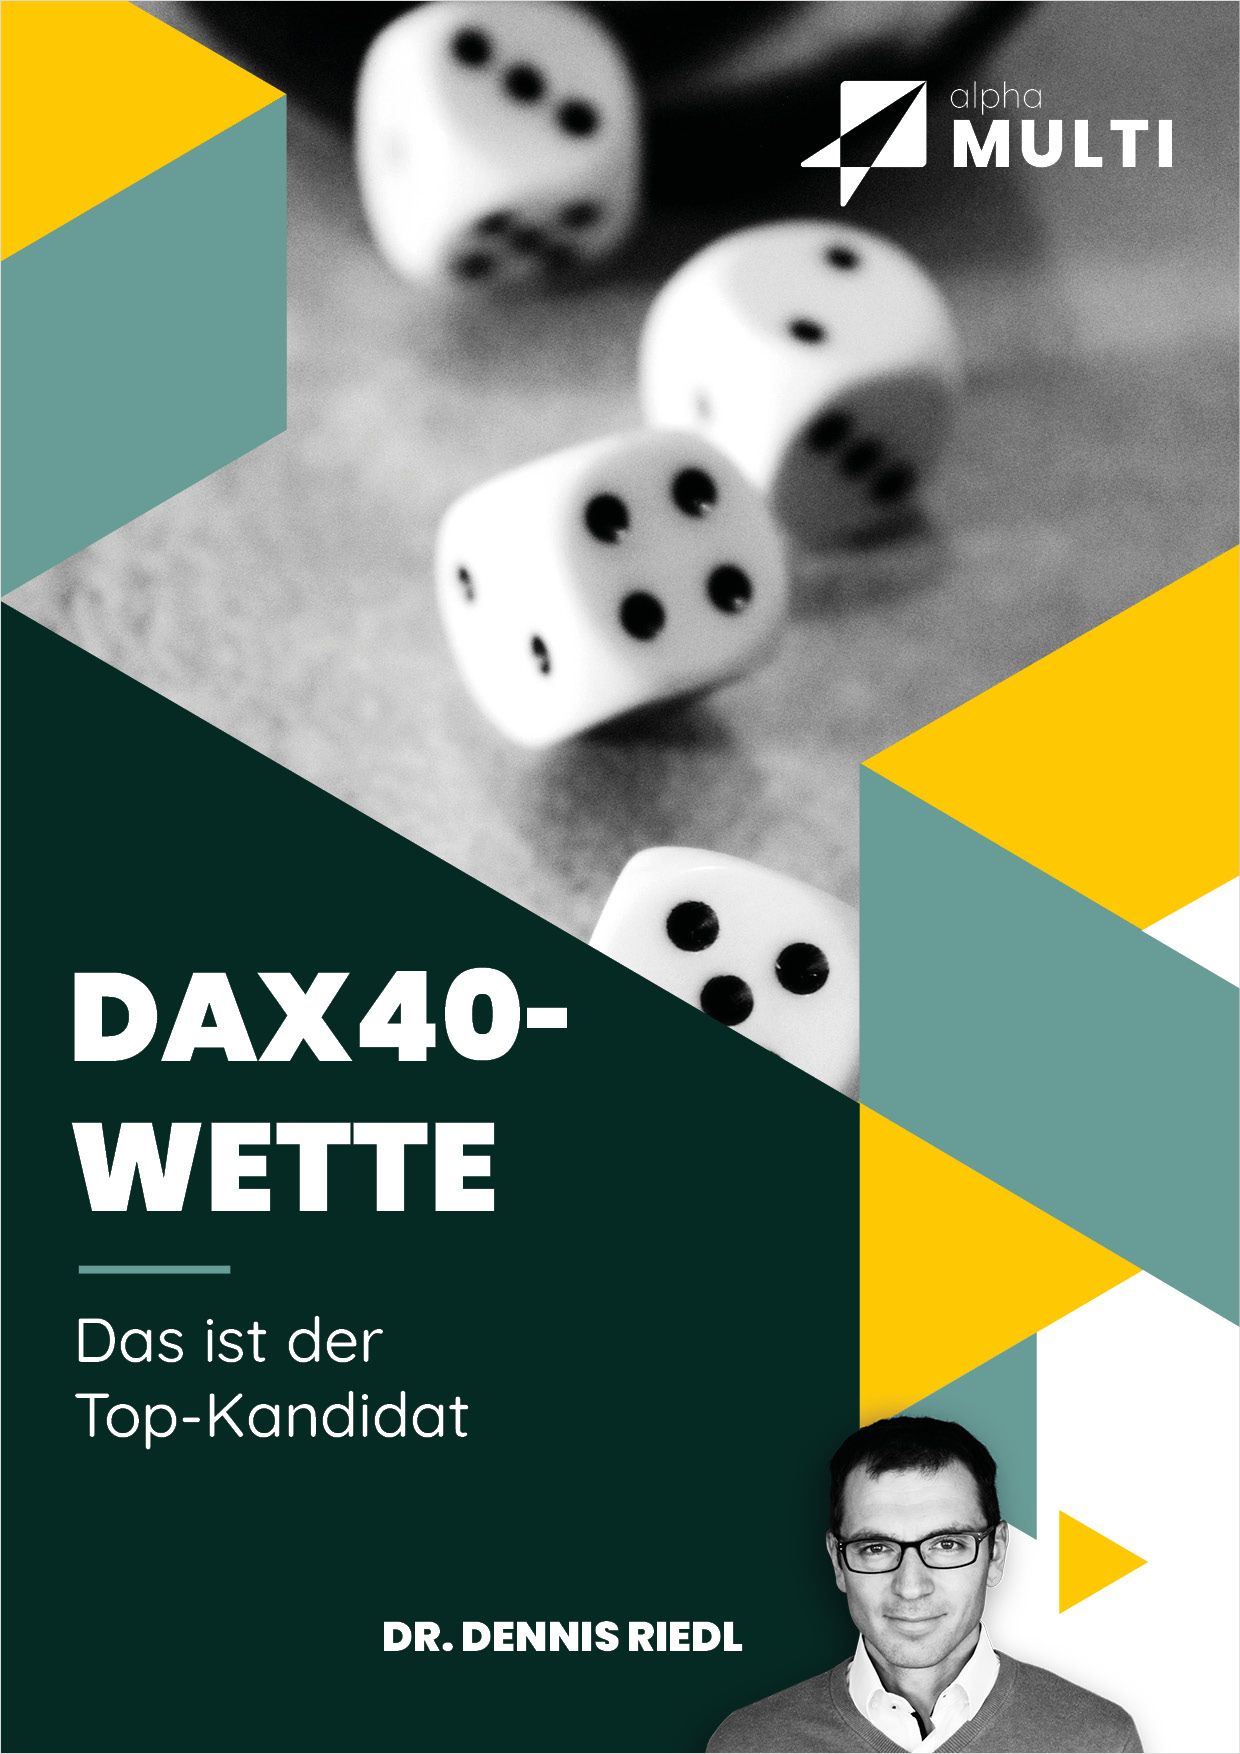 Die DAX40-Wette von Dr. Dennis Riedl